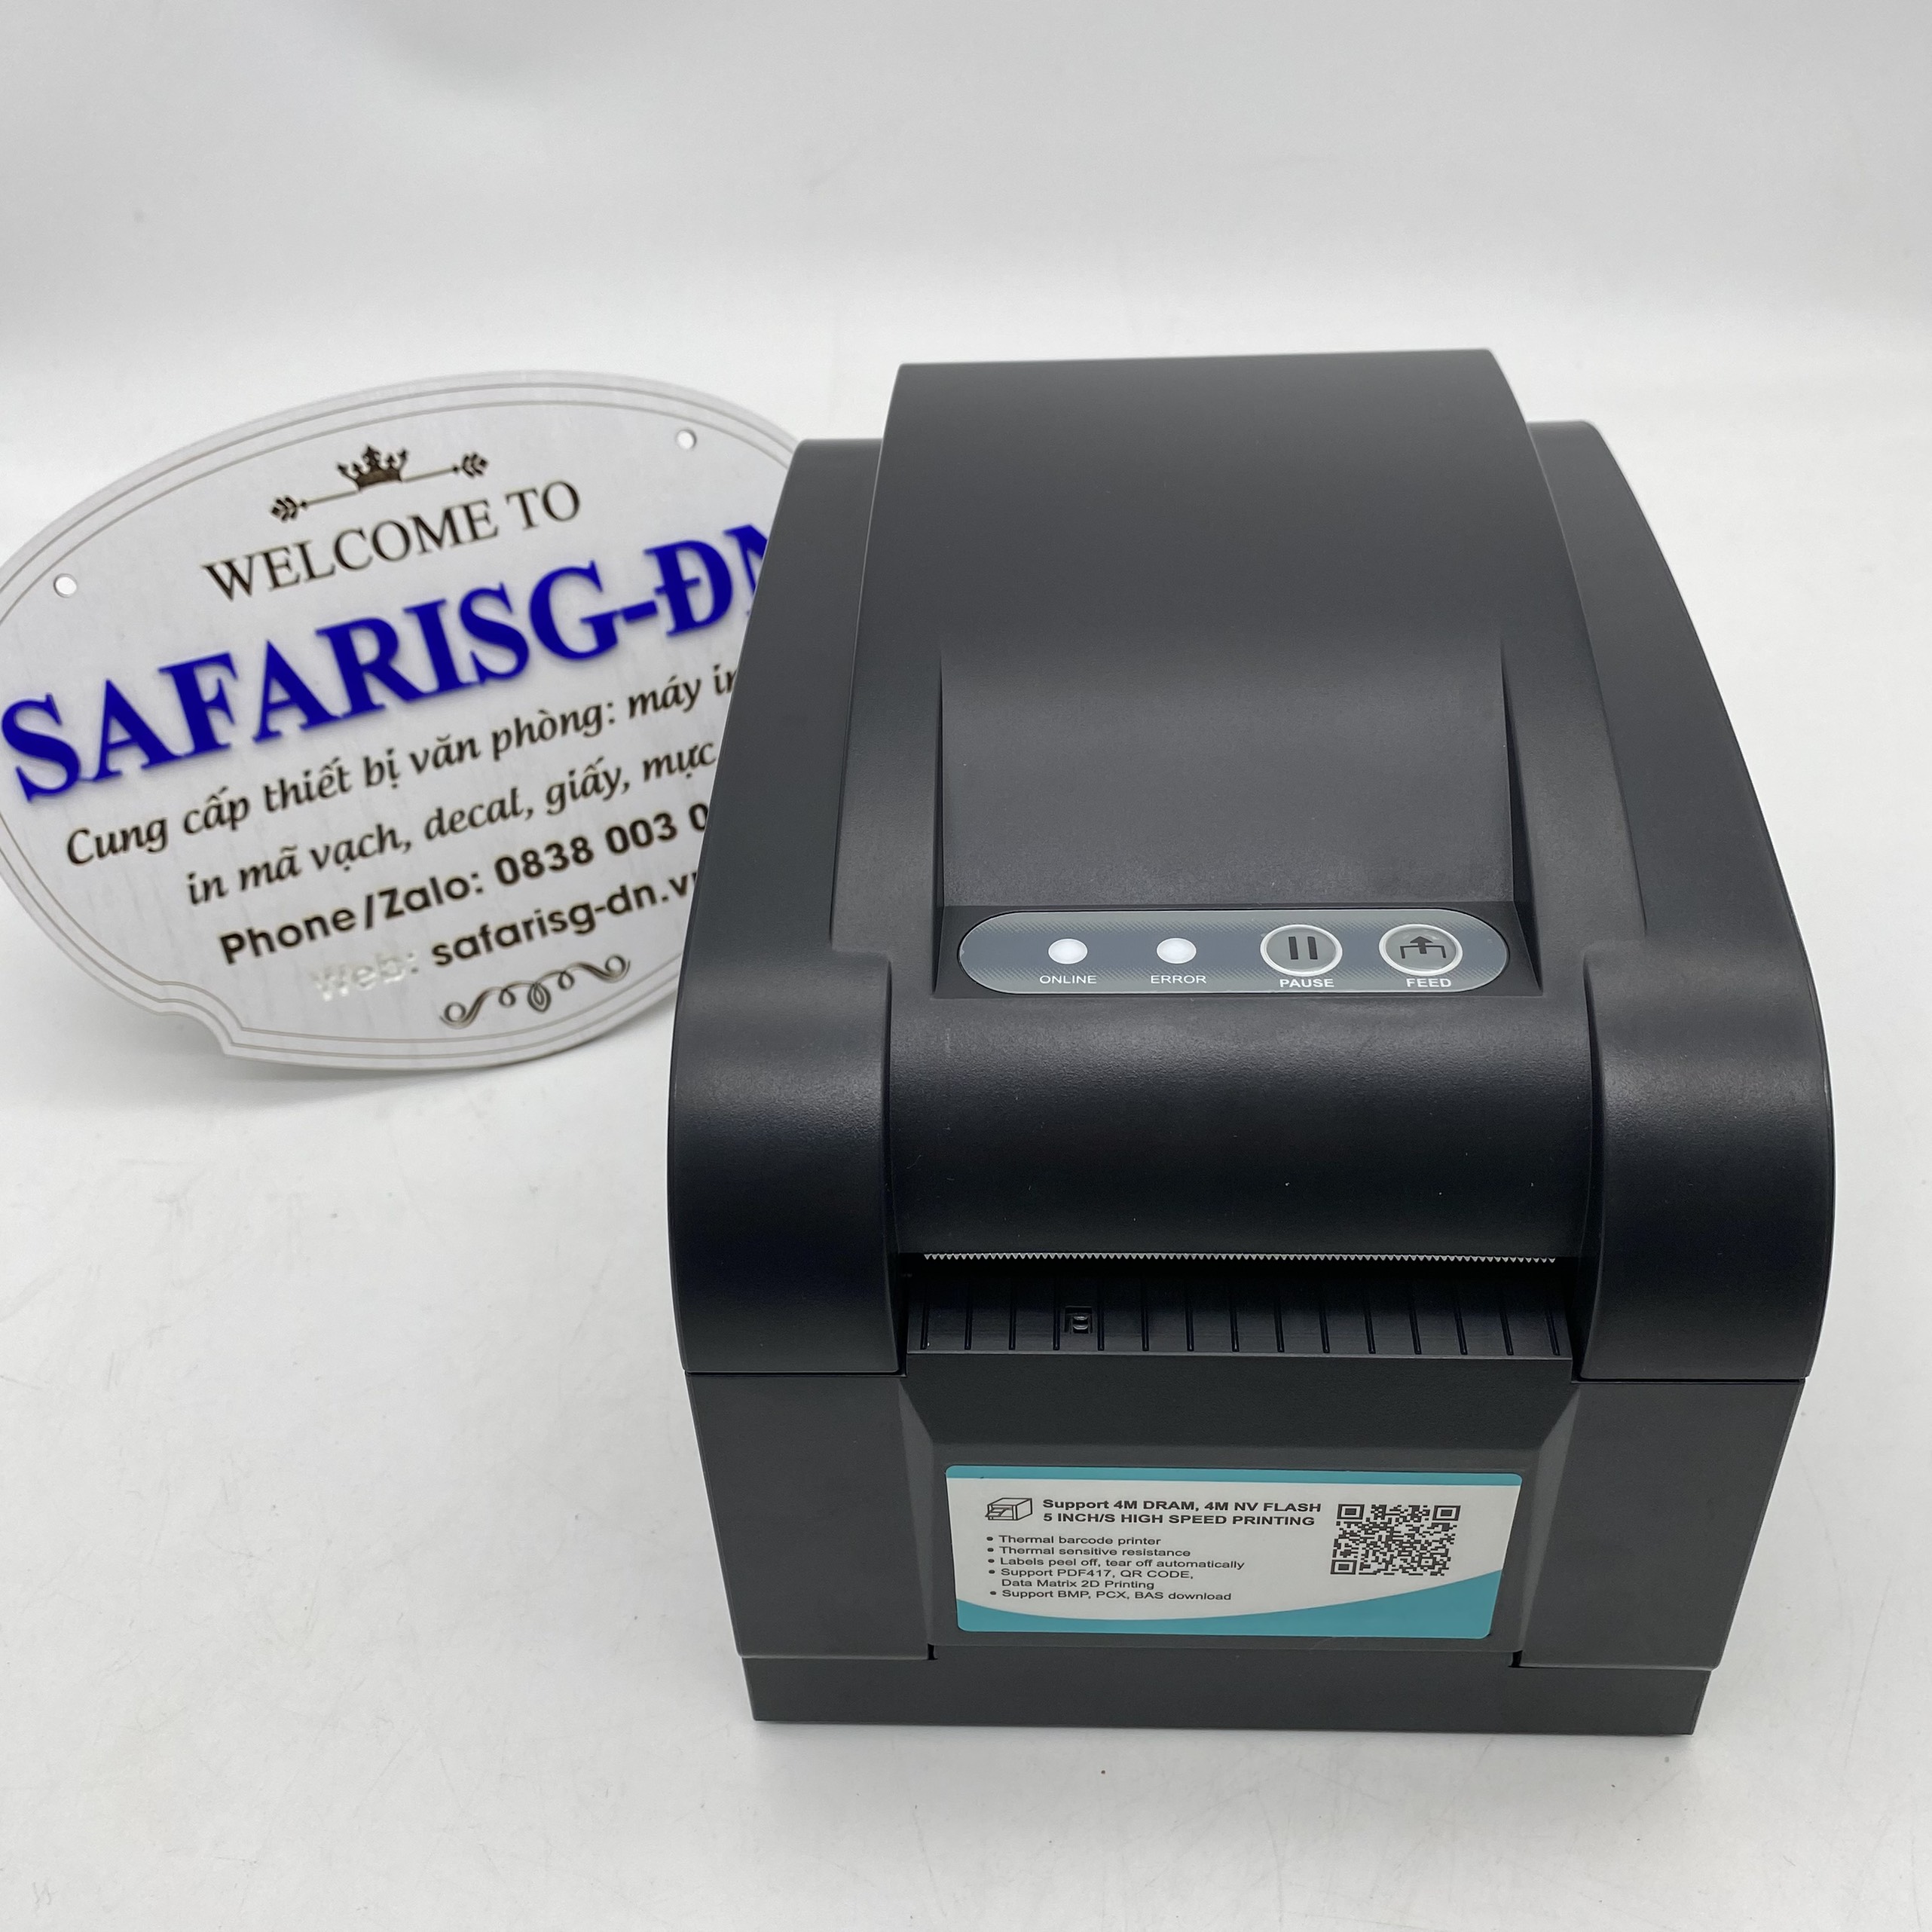 Máy in Xprinter XP 350BM in đơn hàng GHTK bằng điện thoại qua wifi, in tem nhãn và phiếu giao hàng các sàn TMĐT- Hàng chính hãng